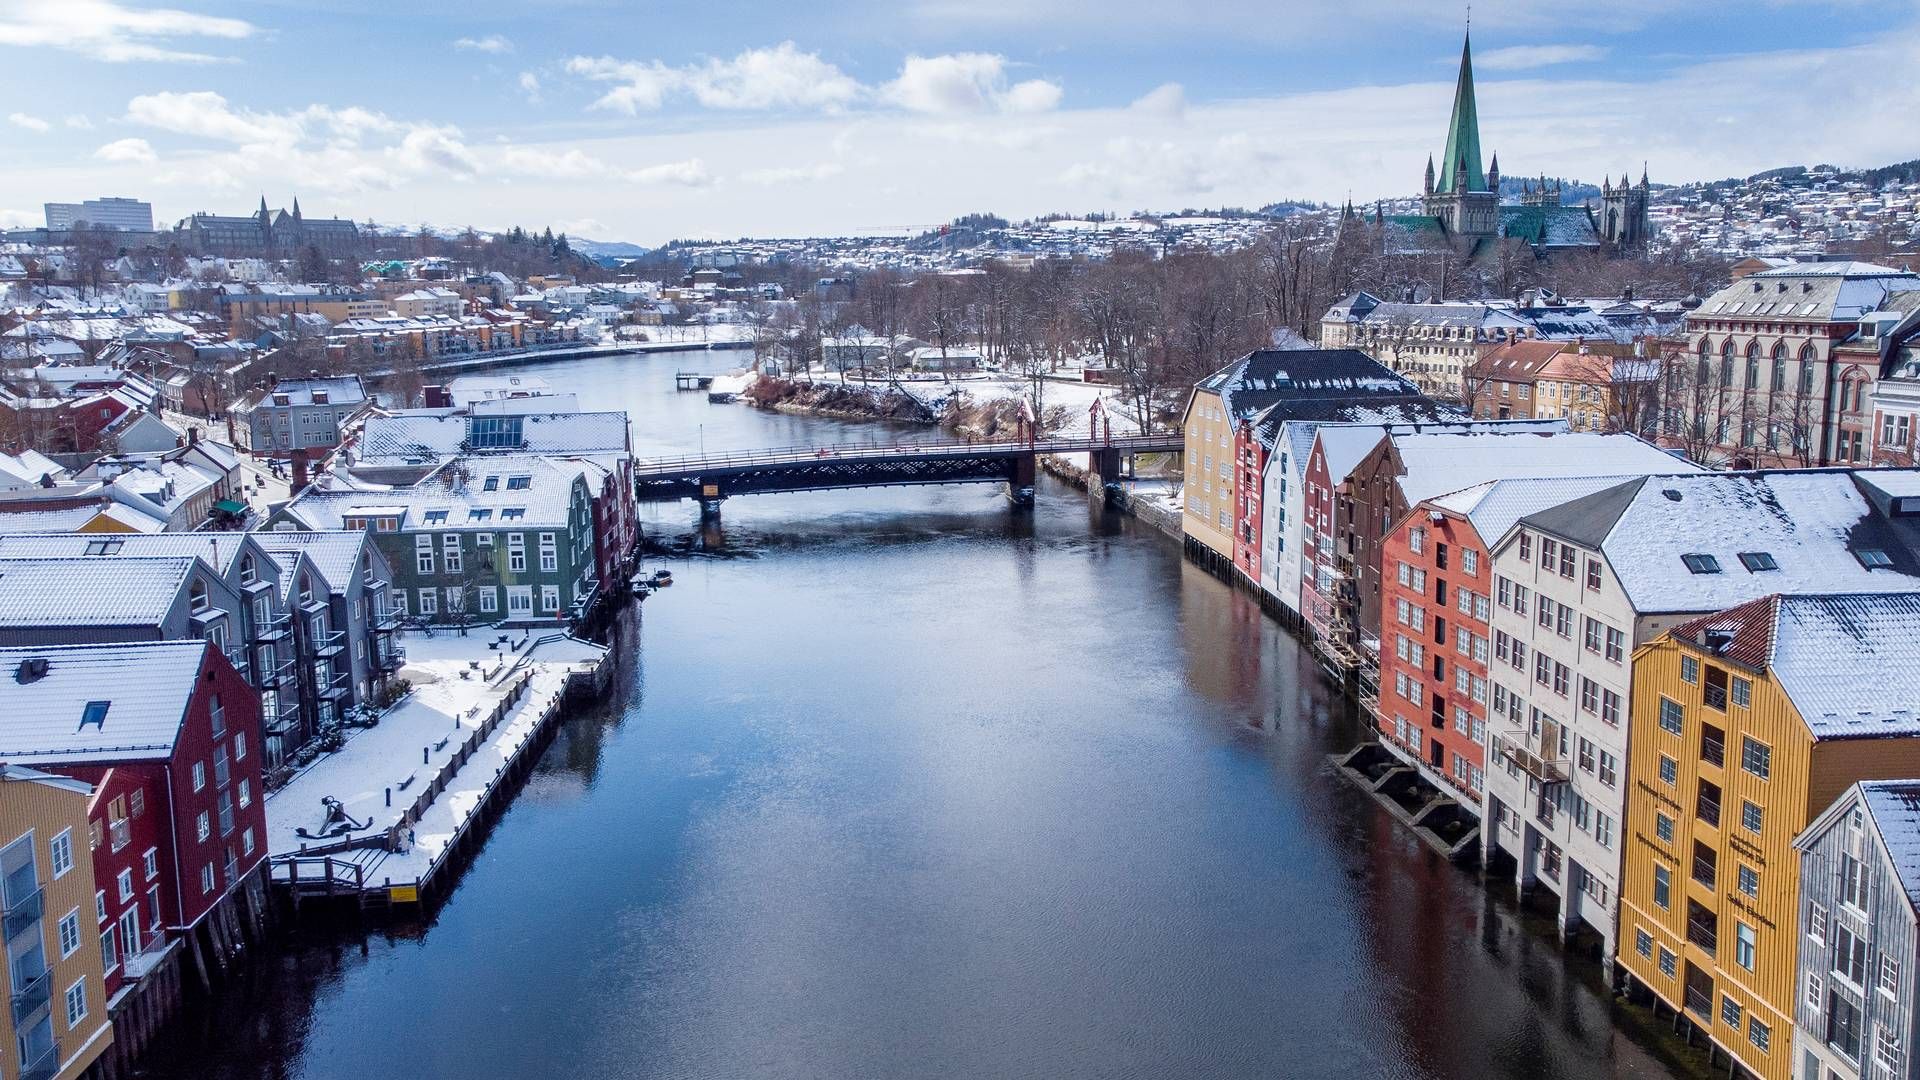 LAV LEDIGHET: Eiendomsmegler 1 Midt-Norge opplyser at kontorledigheten i Trondheim nå er nede i 5 prosent. | Foto: Gorm Kallestad / NTB